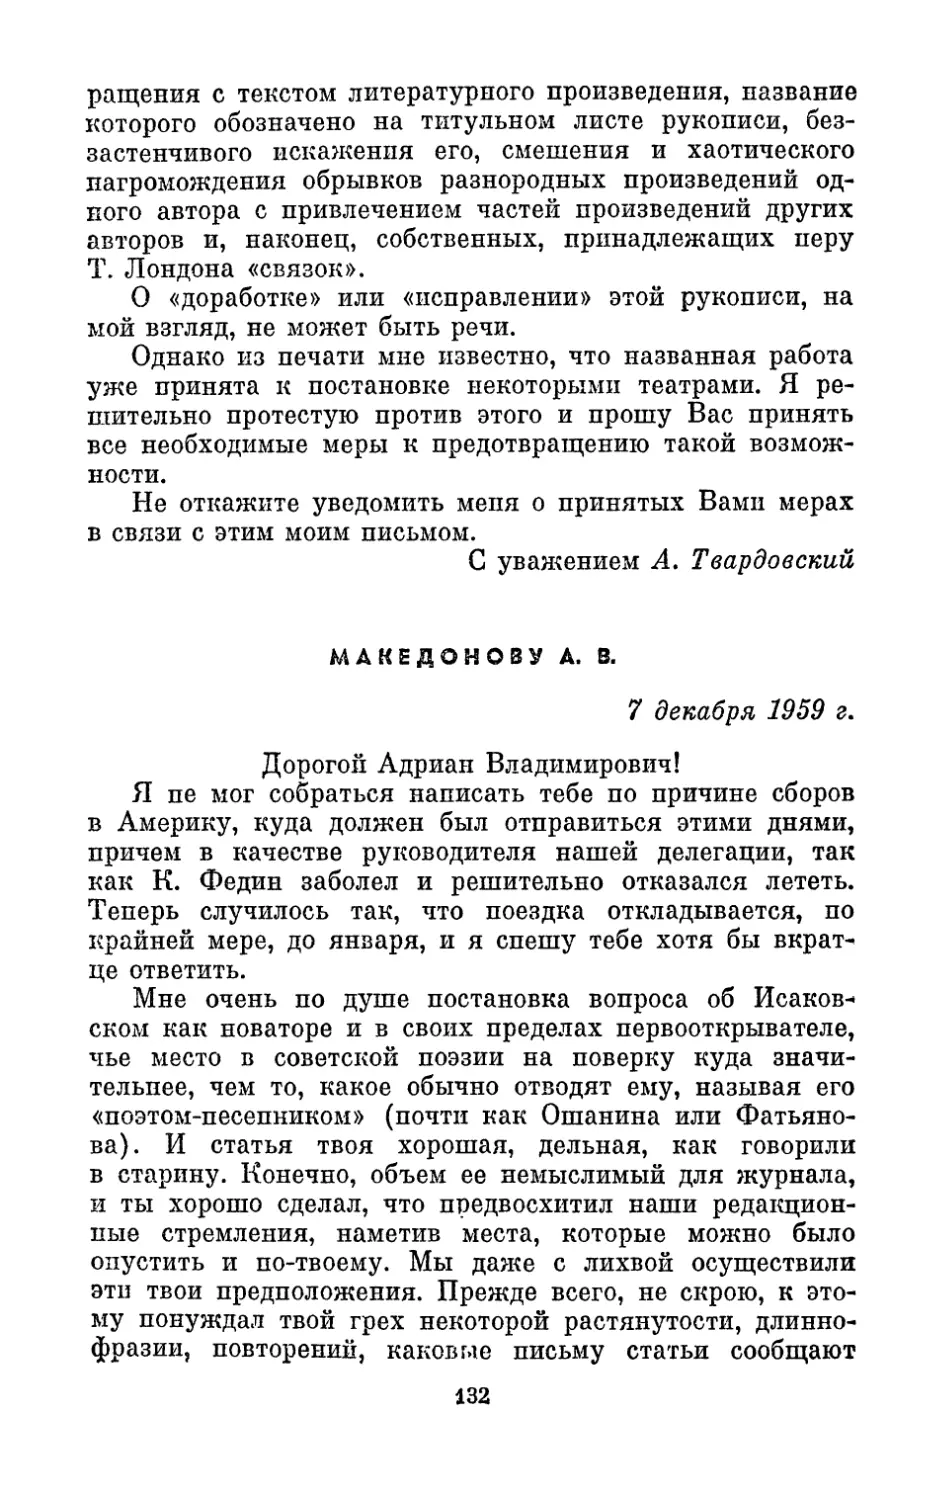 Македонову А. В., 7 декабря 1959 г.